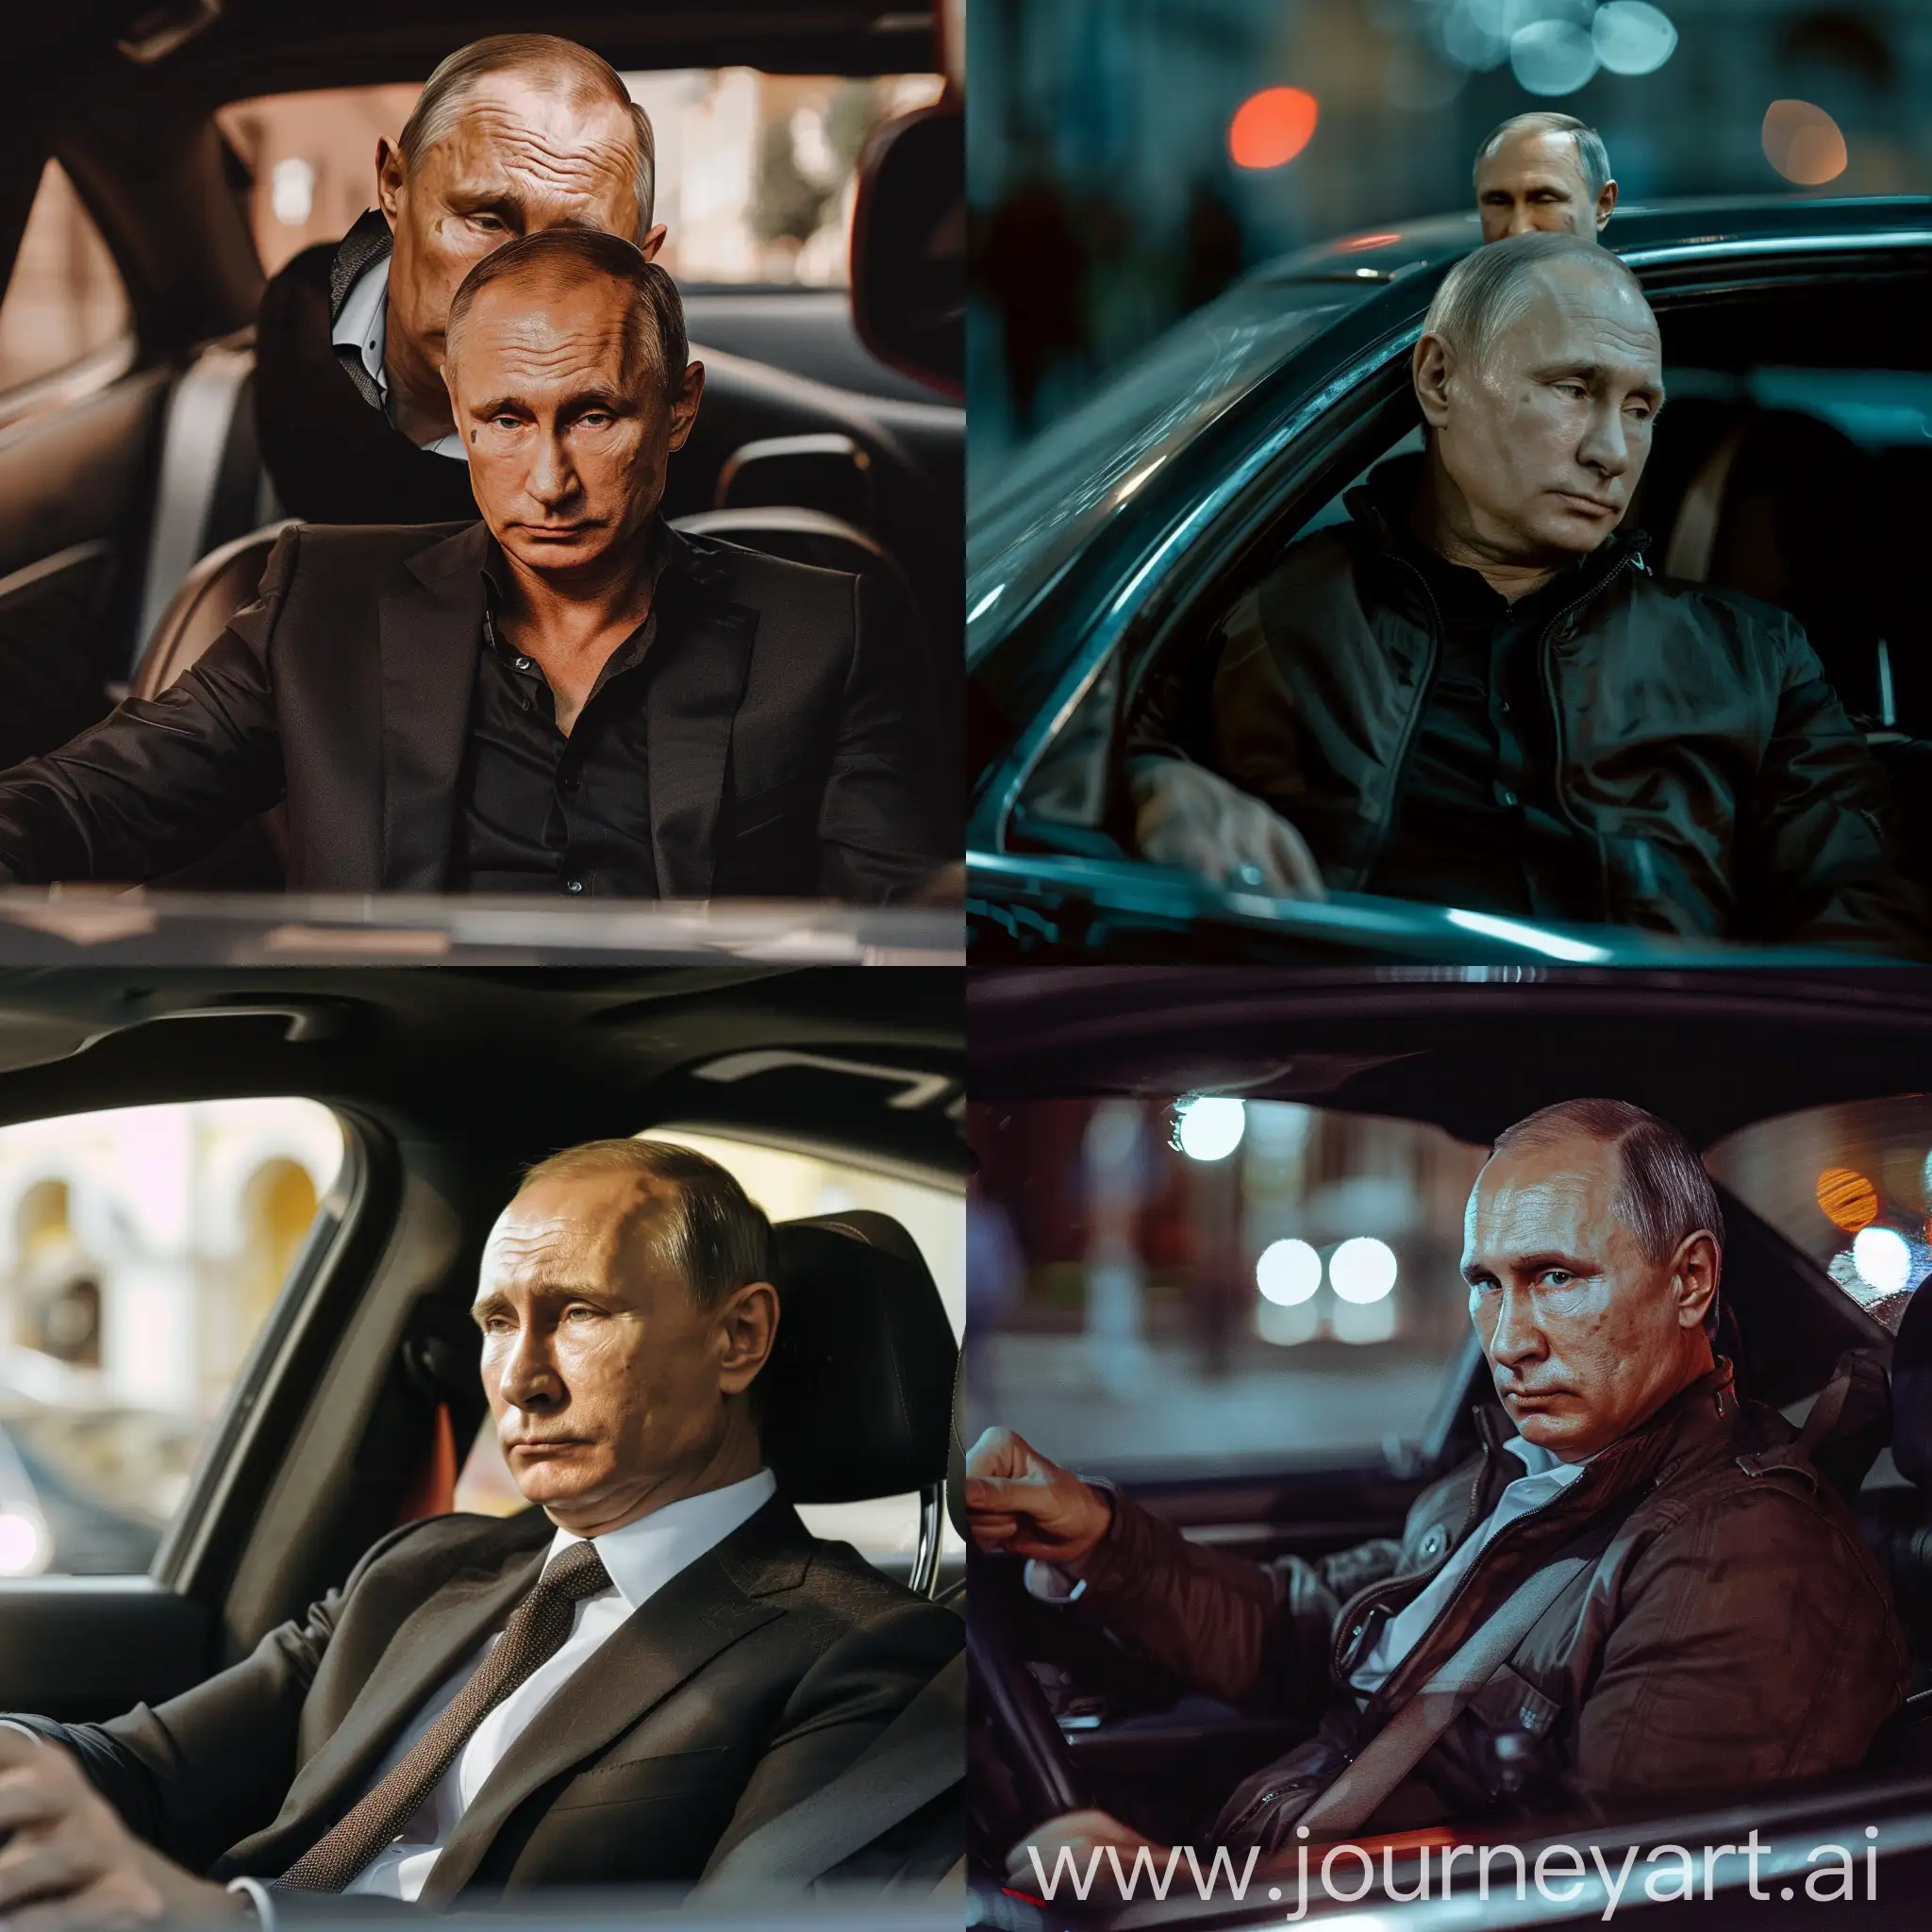 Доминик Торонто с фильма Форсаж сидит в своей машине. Вместо его головы, голова Владимира Путина